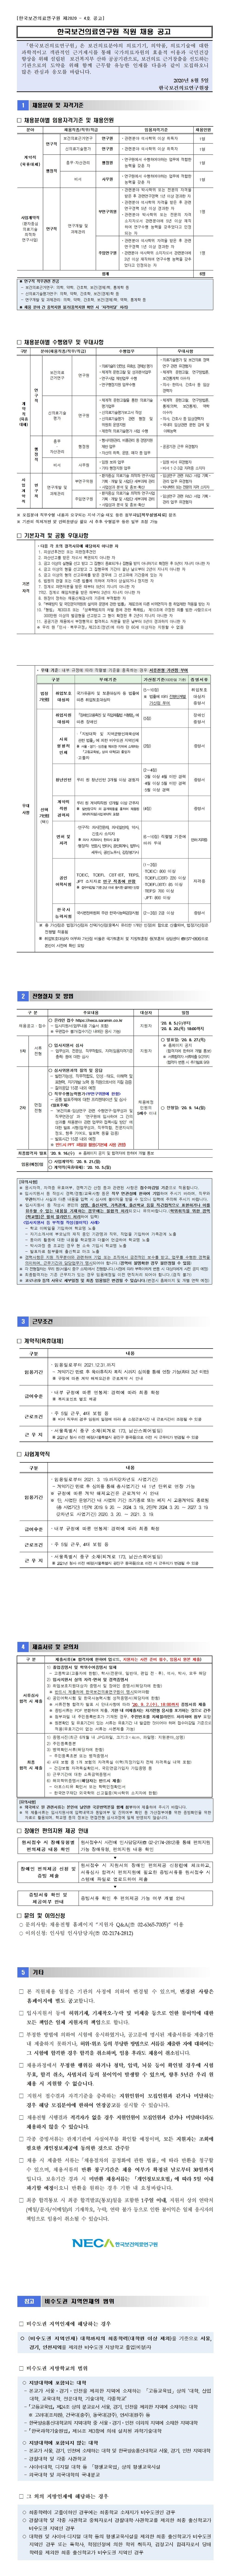 한국보건의료연구원_채용공고.jpg